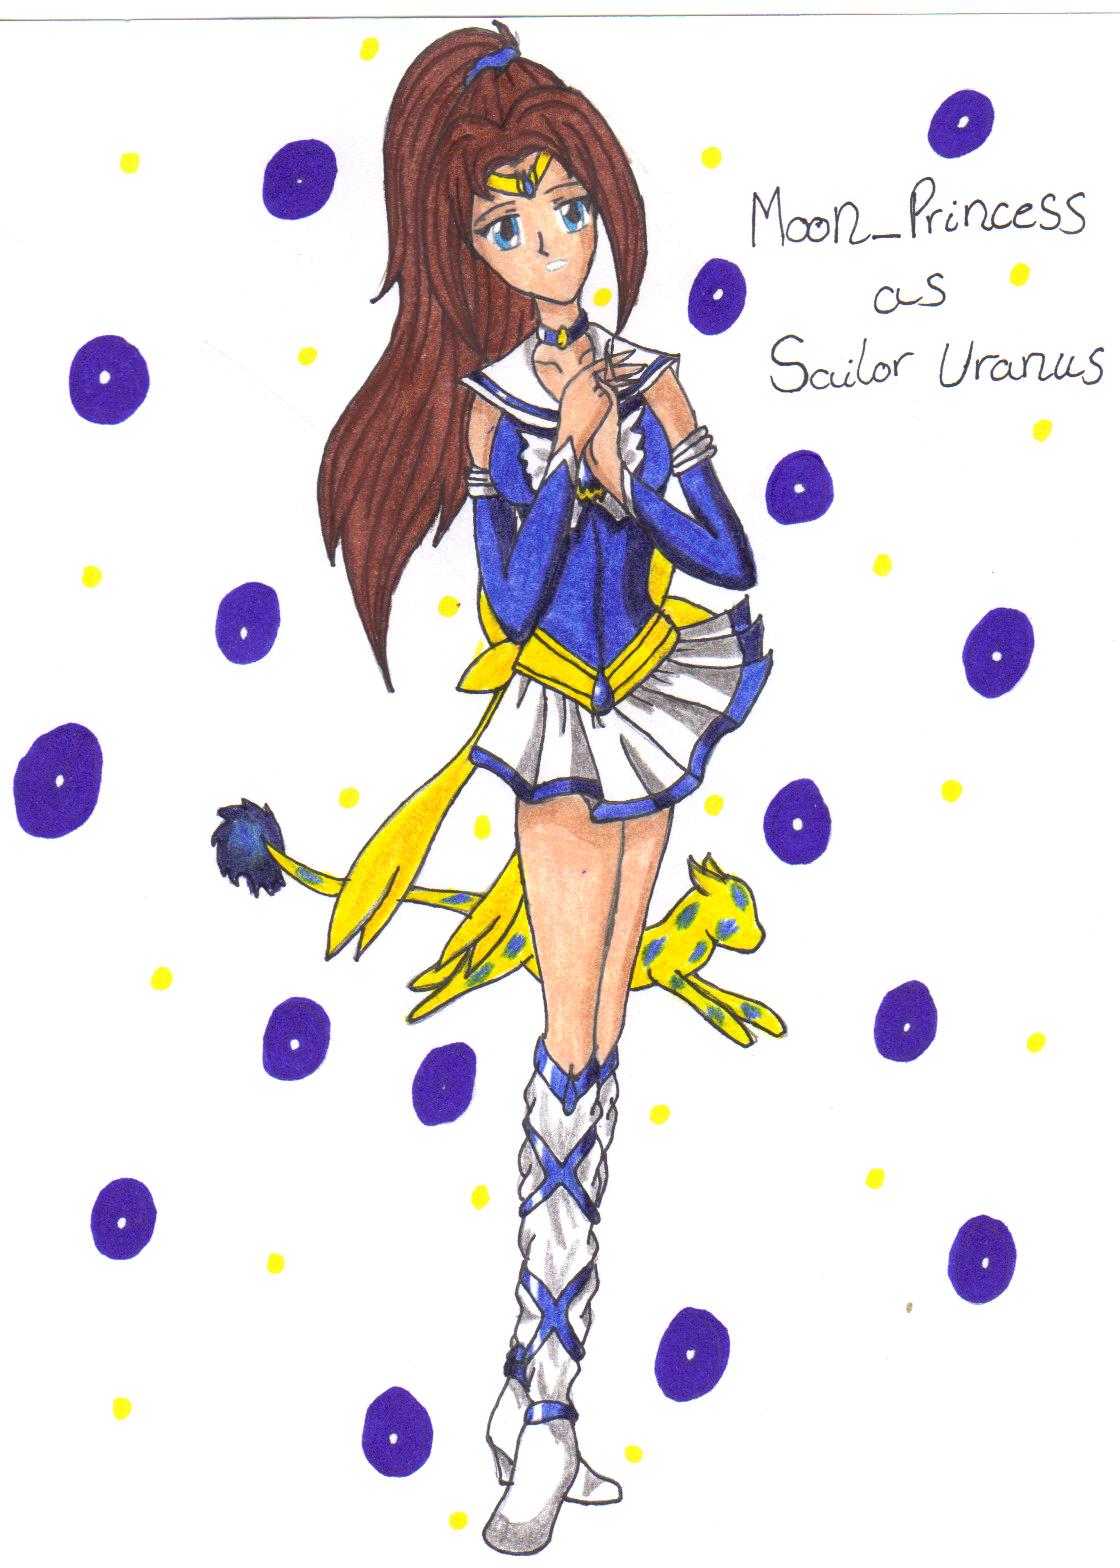 Moon_Princess as Sailor Uranus by setoXyamiKaiba4ever